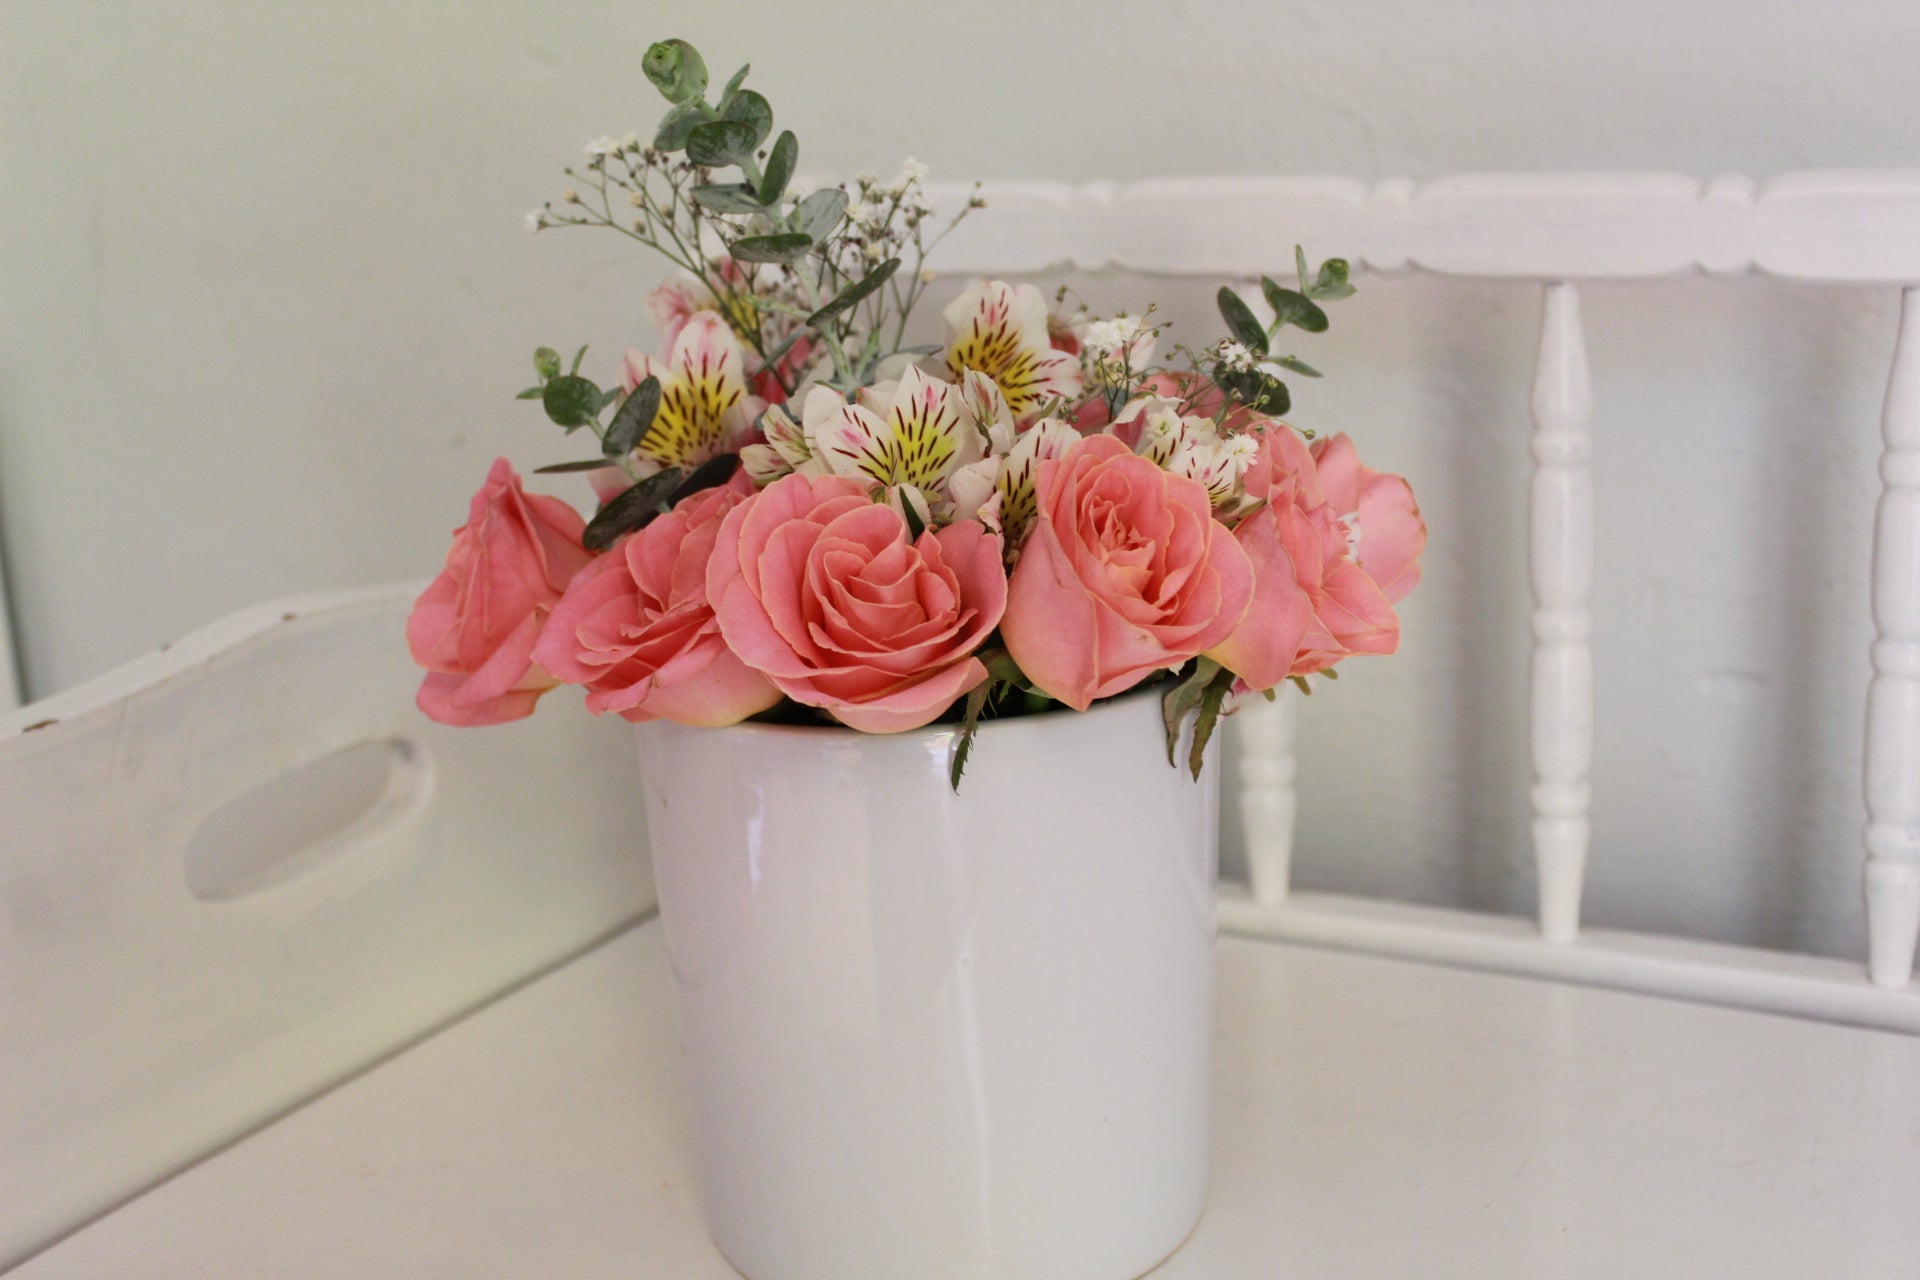 Rosas de invernadero con follaje sobre florero de cerámica.